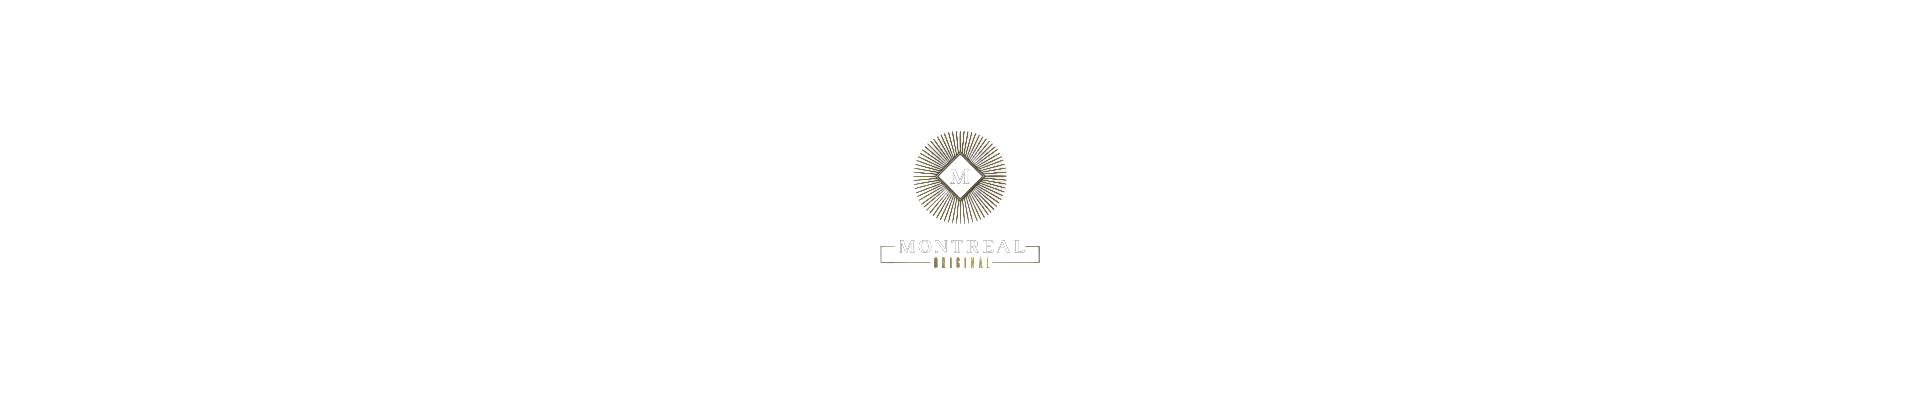 Montreal Original